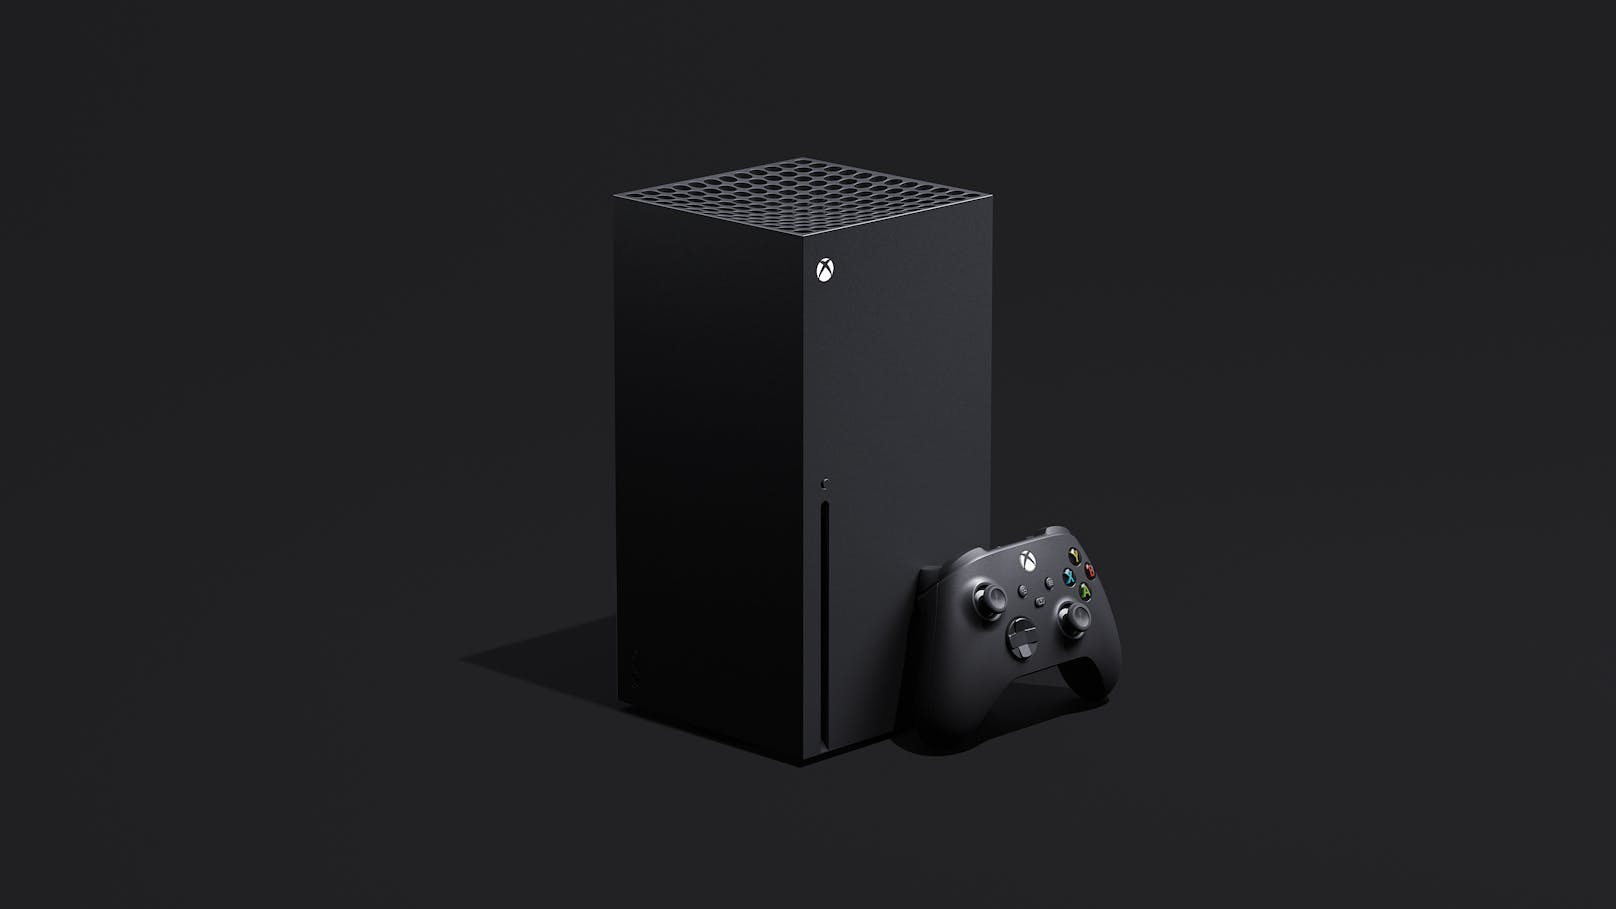 Am 10. November erscheinen Xbox Series X und Xbox Series S – und Microsoft verspricht zum Release 30 Spiele, die für die neue Hardware optimiert sind. Hier ist eine Auswahl der Highlights ...